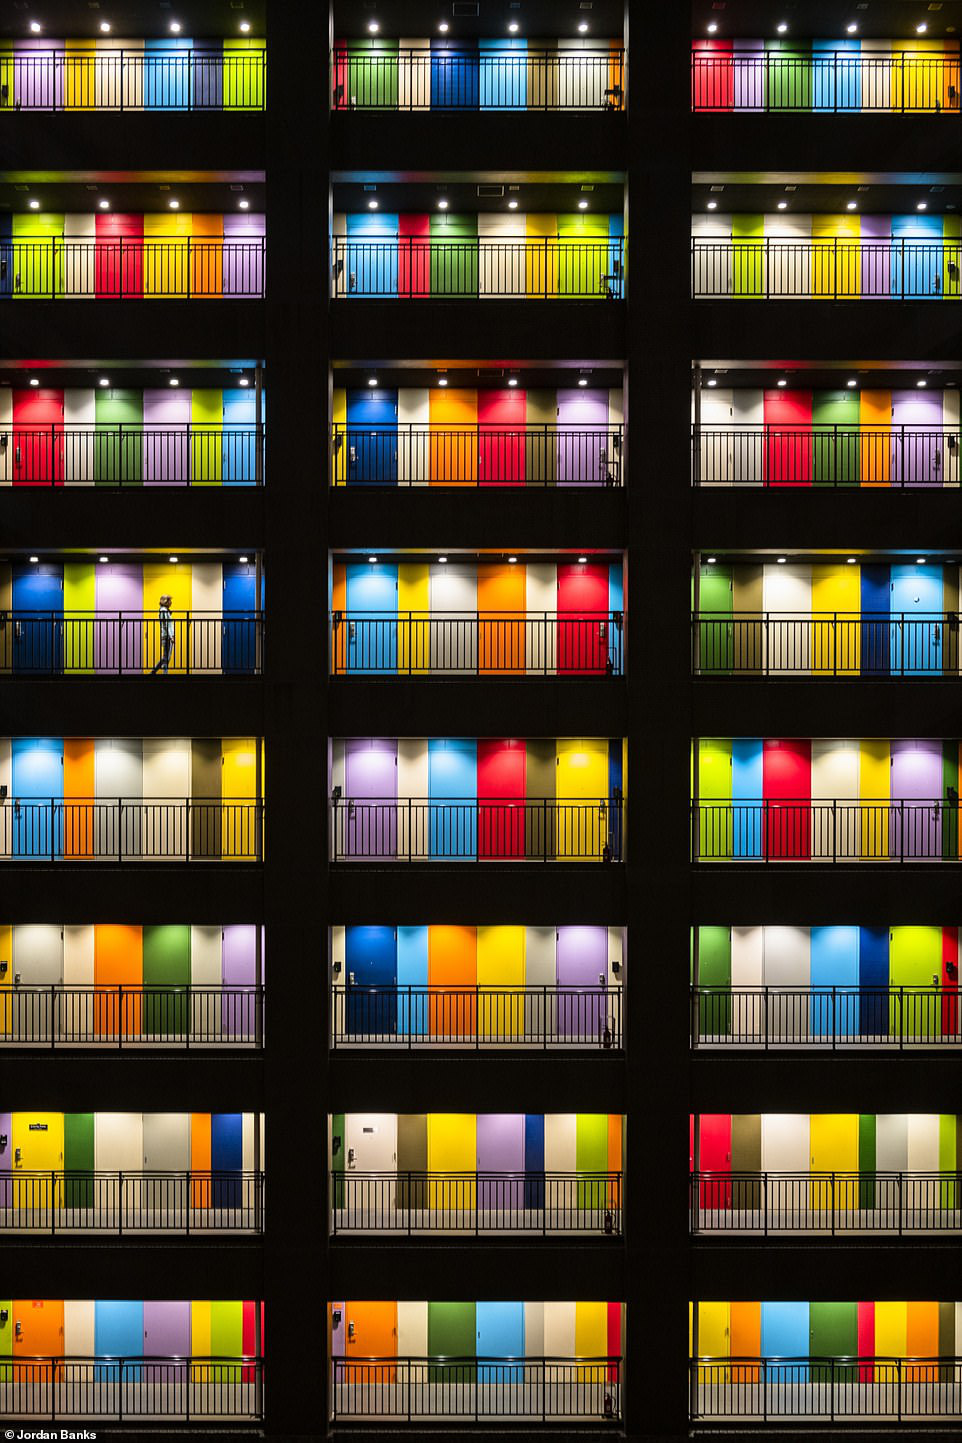 Hình ảnh đầy màu sắc này của nhiếp ảnh gia Jordan Banks, lọt vào chung kết ở hạng mục đô thị. Ảnh được chụp tại một trong những tòa nhà khu căn hộ tư nhân ở Odaiba, Tokyo, Nhật Bản. Đây là một khu phức hợp các tòa nhà cao tầng ven sông, cung cấp nhà ở và văn phòng cho thuê. Điểm thu hút chính của các tòa nhà là những cánh cửa đầy màu sắc, thu hút rất nhiều nhiếp ảnh gia đến chụp ảnh